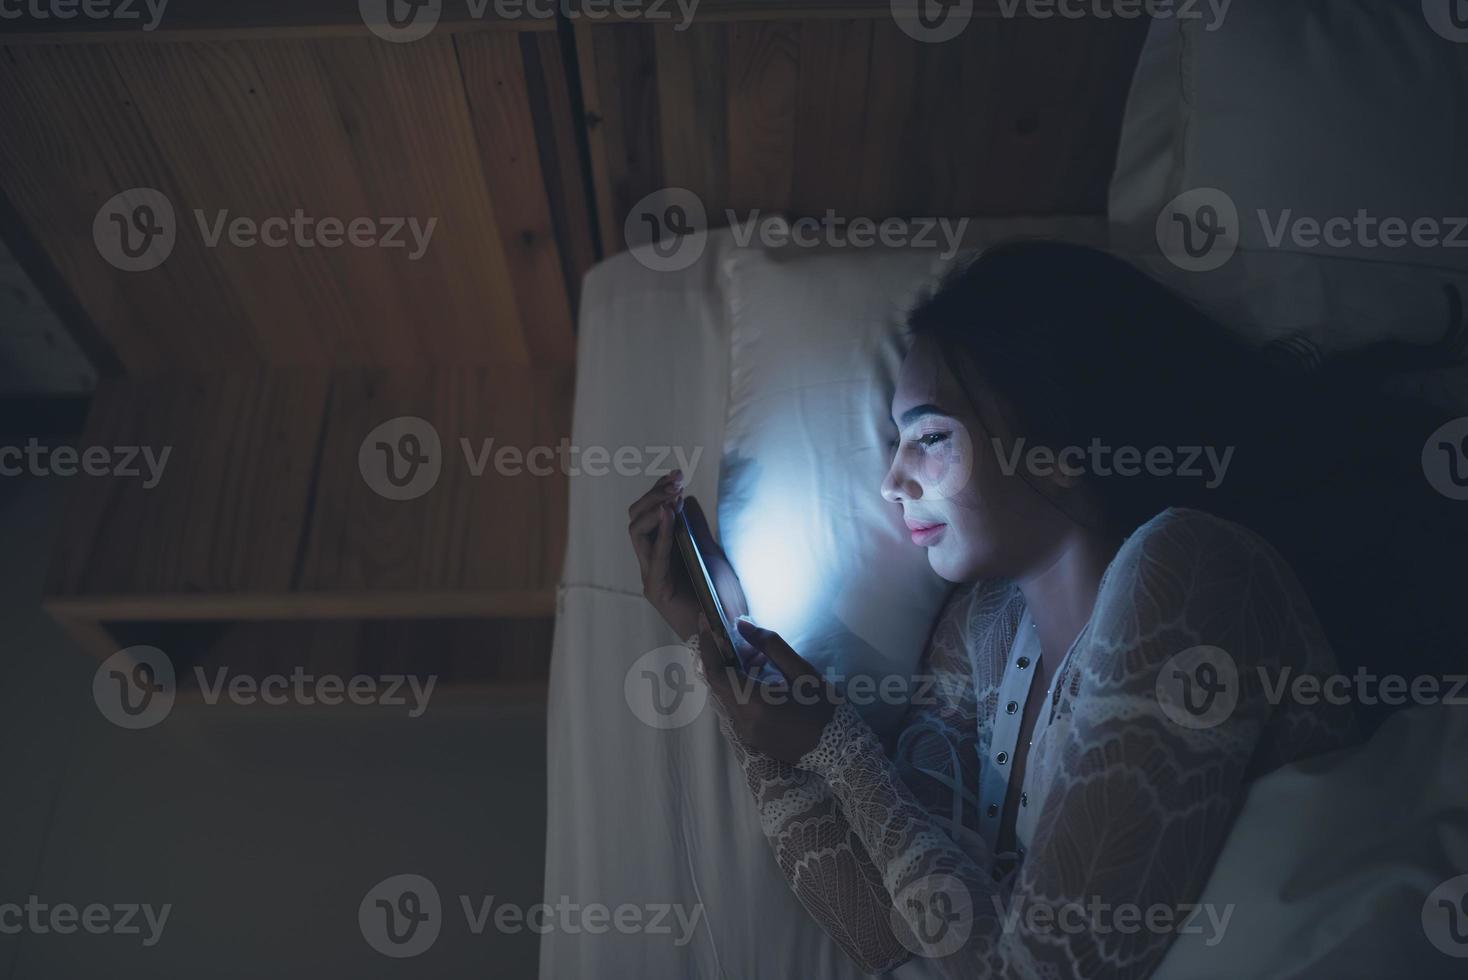 mulher asiática jogando no smartphone na cama à noite, tailândia, viciado em mídia social foto